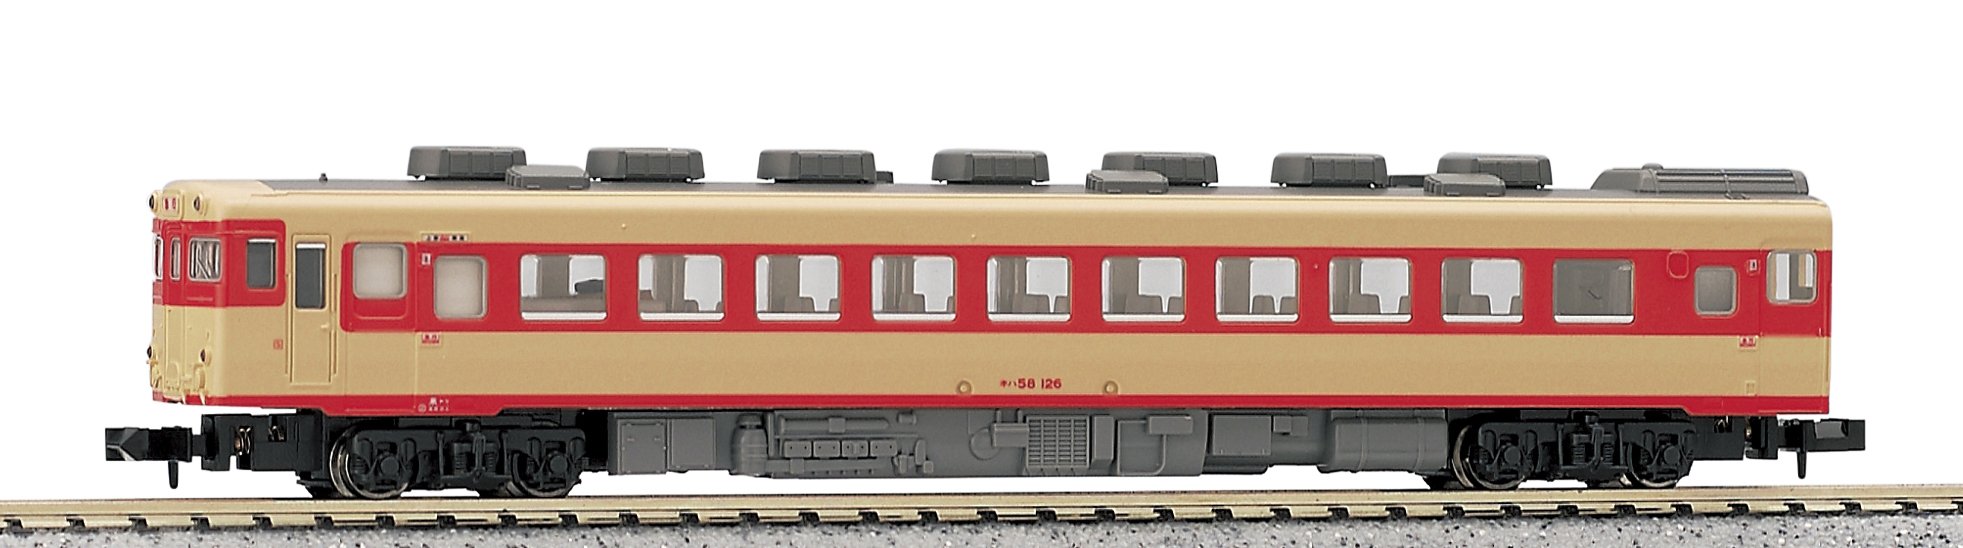 Kato N Gauge Kiha58 M 6048 Diesel Car Railway Model